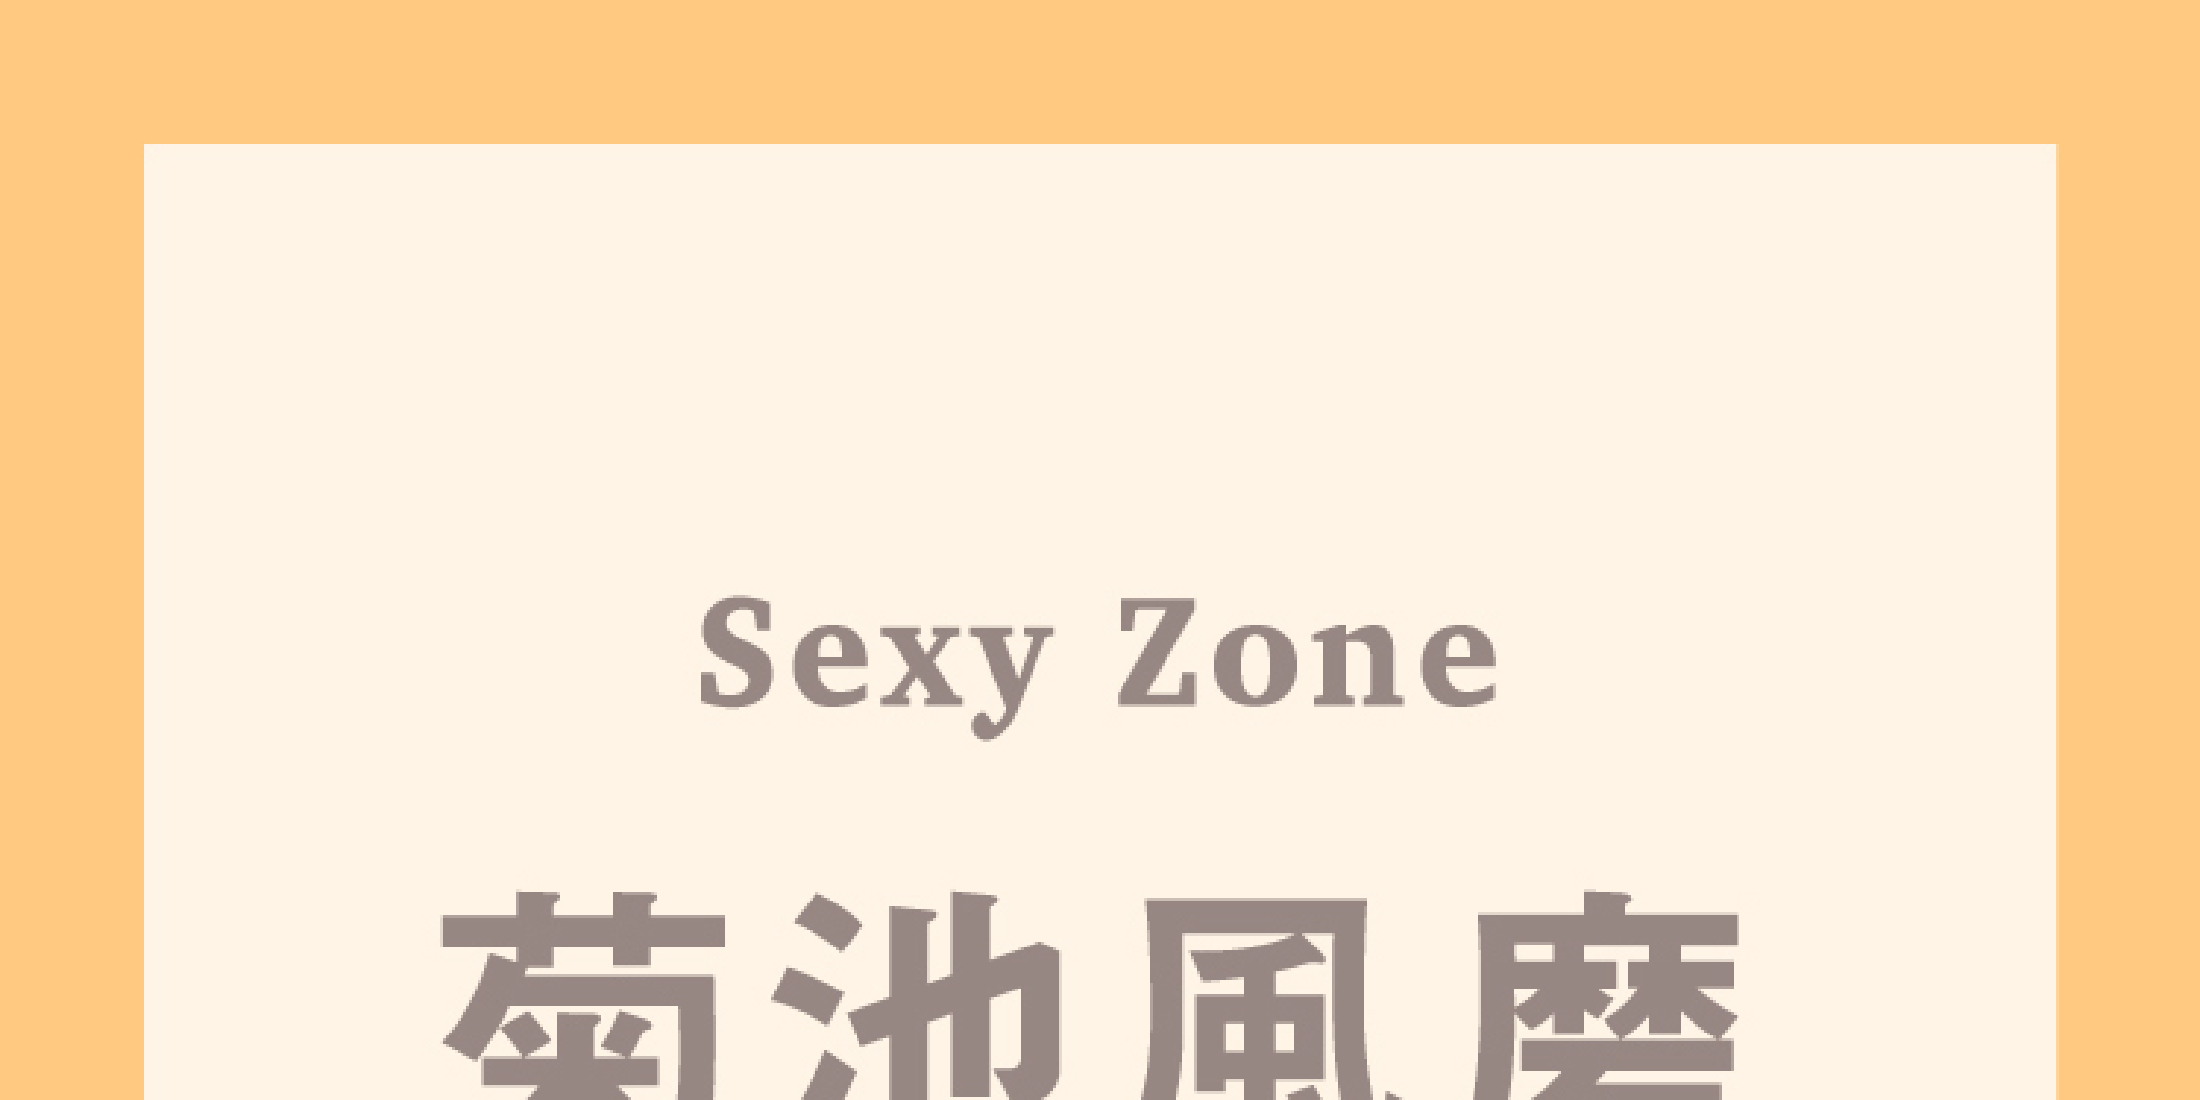 Sexy Zone菊池風磨も緊張する時がある？「最初は倉科（カナ）さんと全然話せなかった。でも、それでいいんですよ」